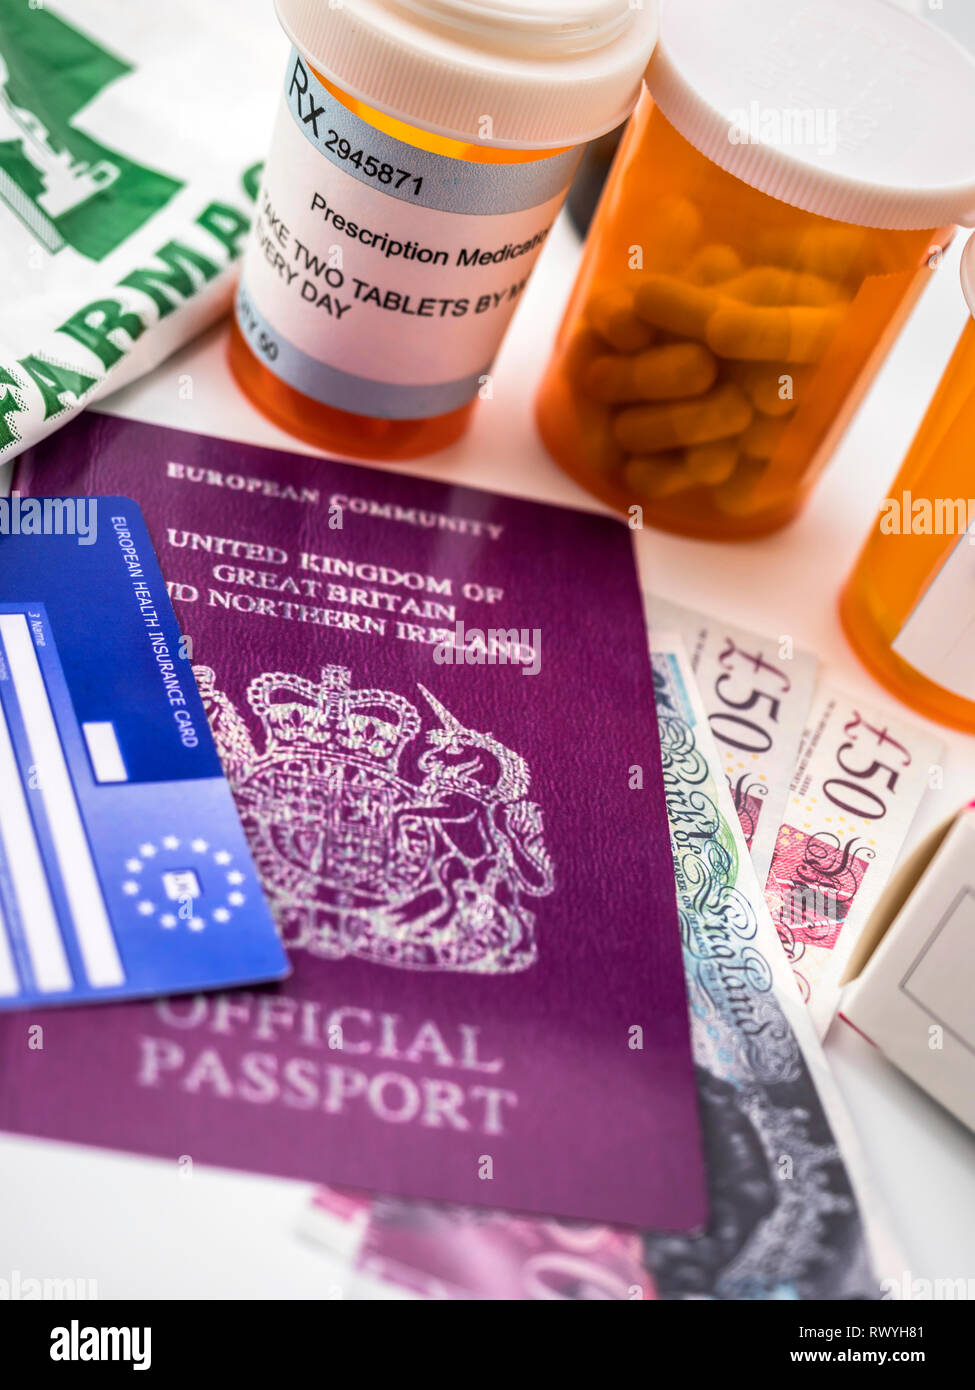 Passeport britannique et carte européenne de santé ainsi que plusieurs capsules, notion de prix médical dans la crise de l'image conceptuelle, Brexit, la coopération verticale Banque D'Images